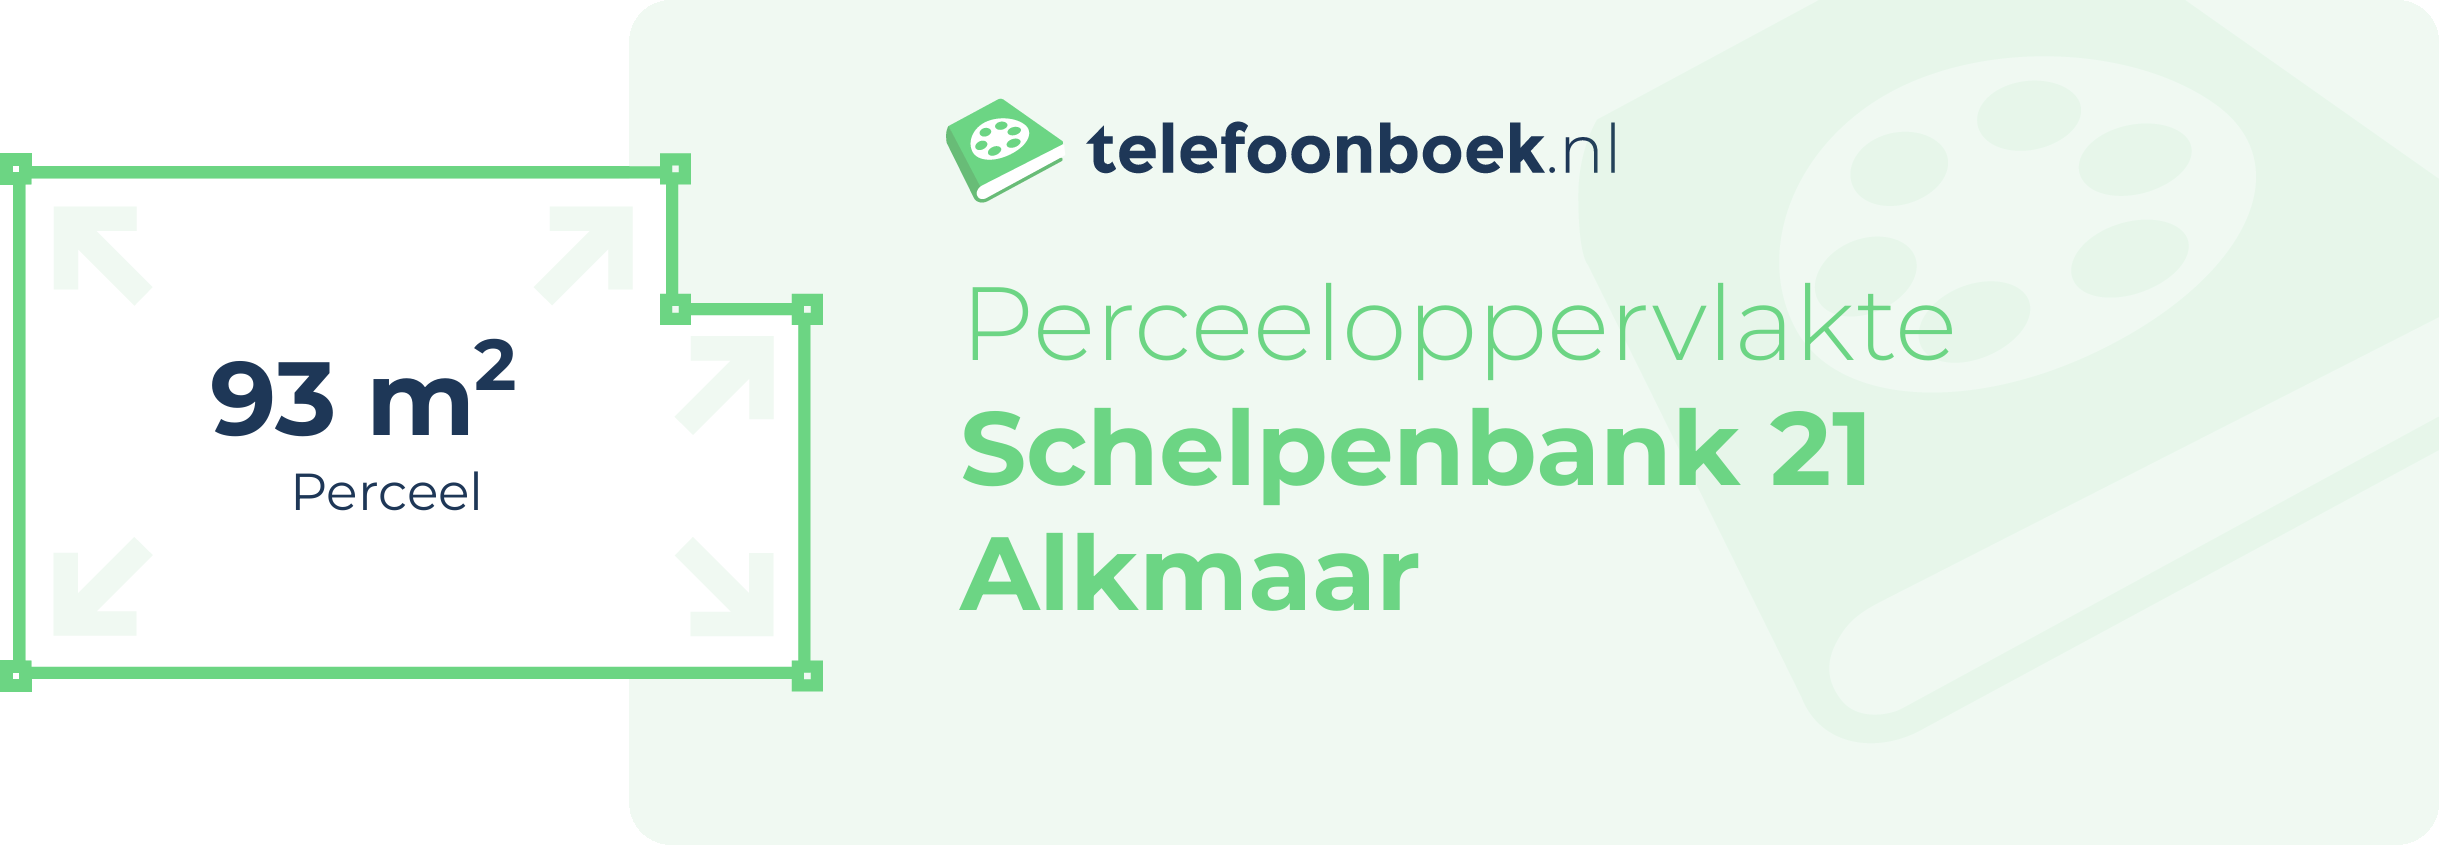 Perceeloppervlakte Schelpenbank 21 Alkmaar